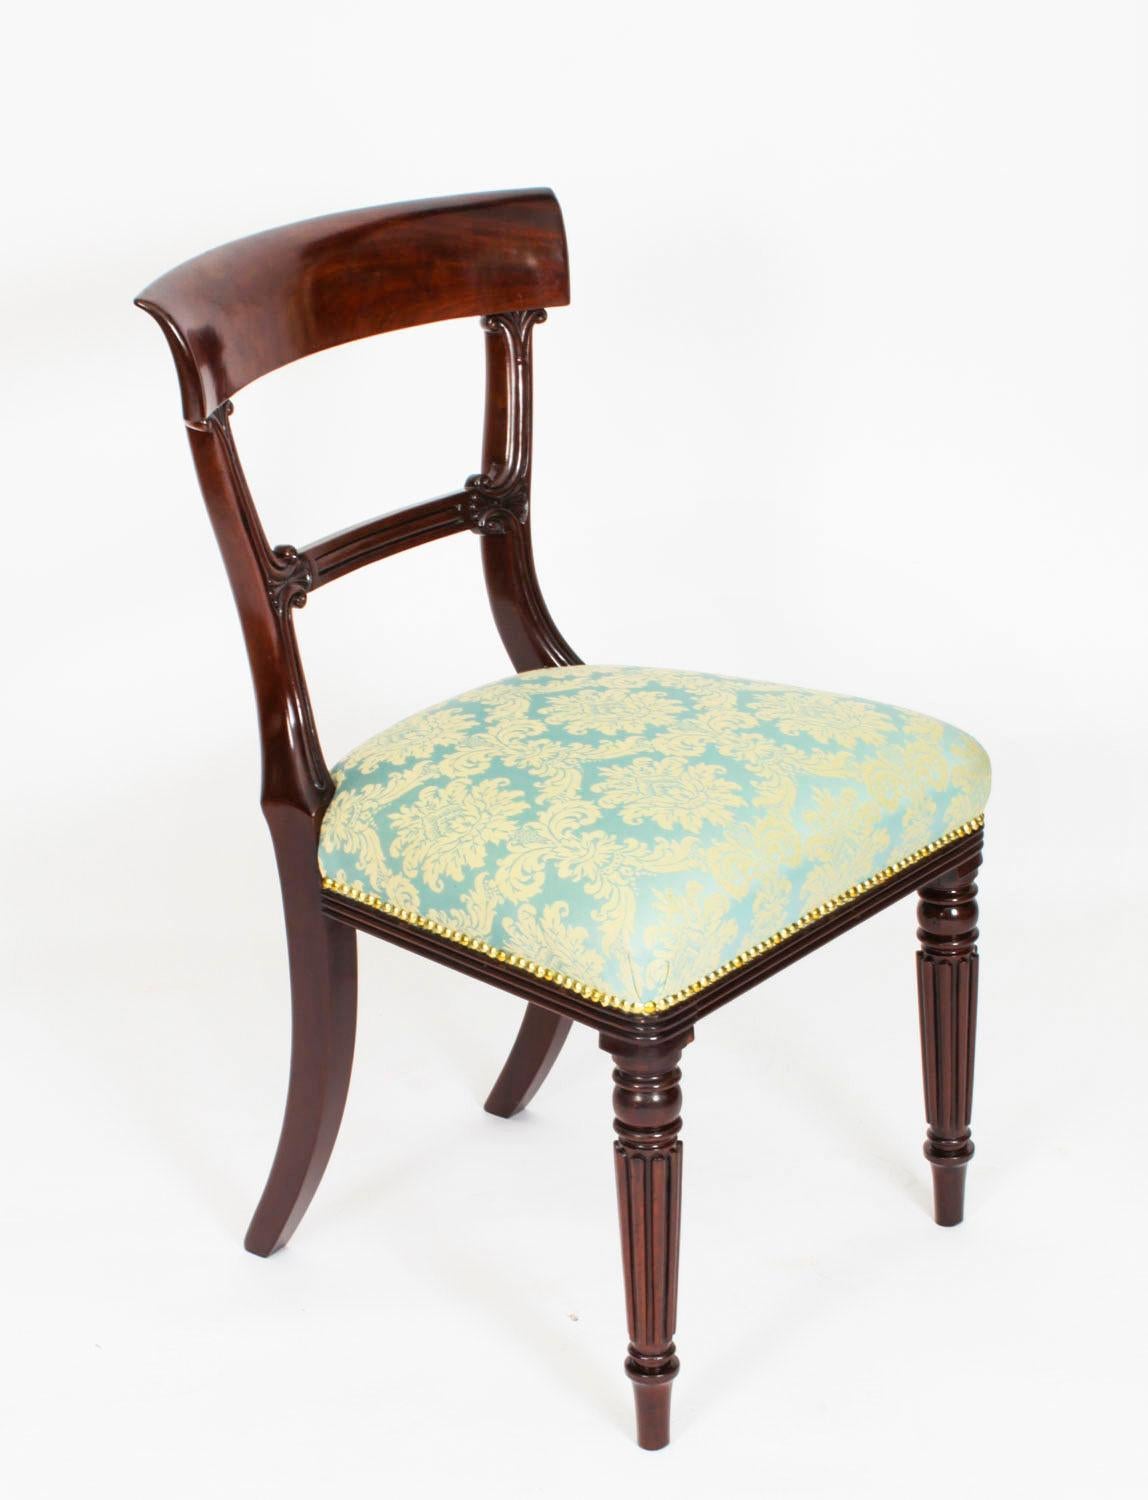 Dies ist ein fantastisches englisches Set von acht antiken  William IV Barback Esszimmerstühle, ca. 1830.

Das Set besteht aus acht Beistellstühlen mit Sitzflächen, die mit einem auffälligen azurfarbenen Stoff neu bezogen wurden, und  erhoben am 